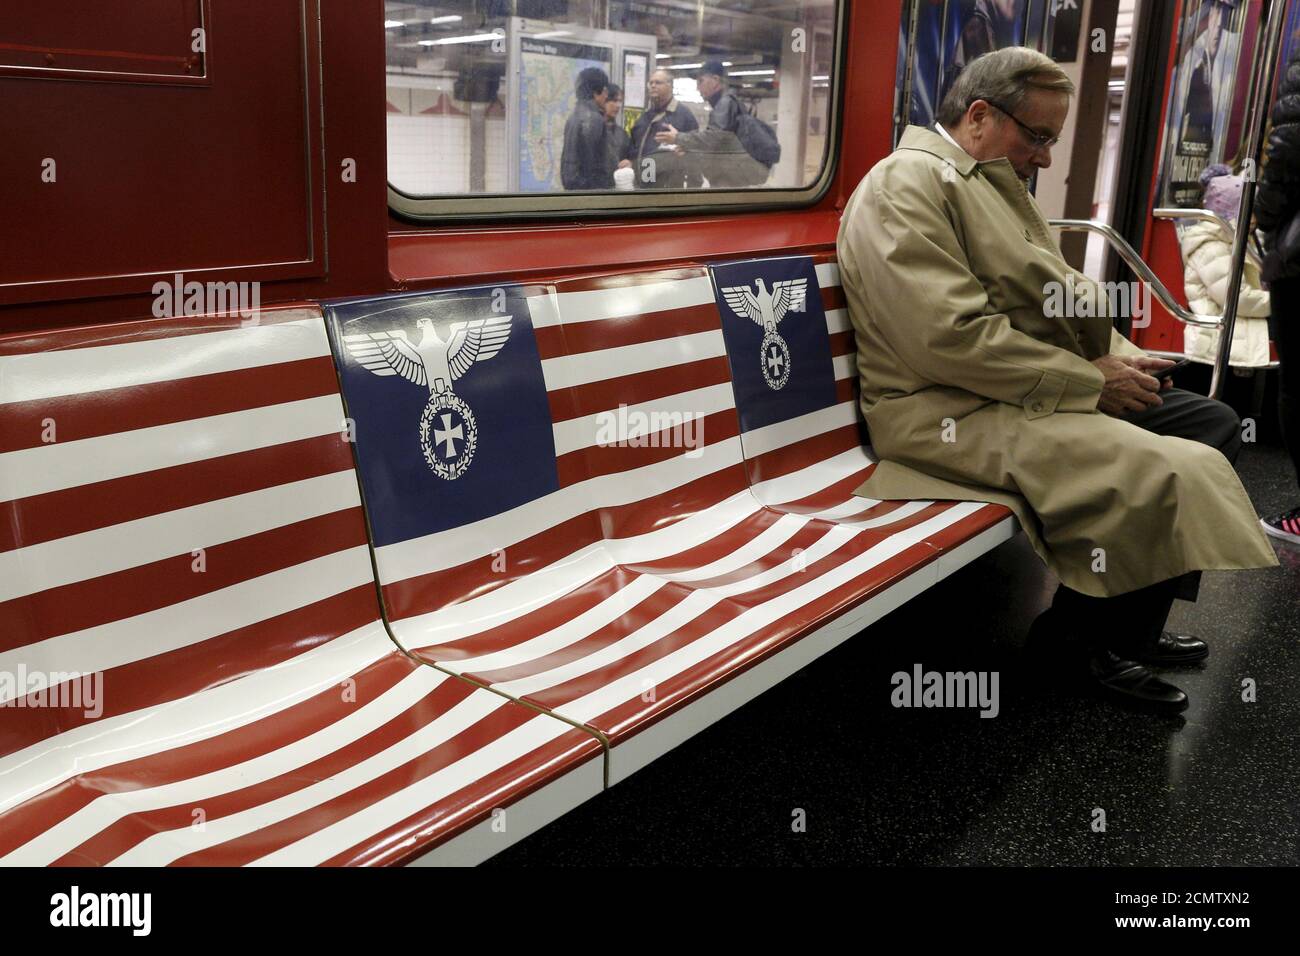 Passagiere fahren einen 42nd Street Shuttle U-Bahn-Zug, verpackt mit  Werbung für die Amazon-Serie "The man in the High Castle", in Manhattan,  New York, 24. November 2015. Der Bürgermeister von New York, Bill